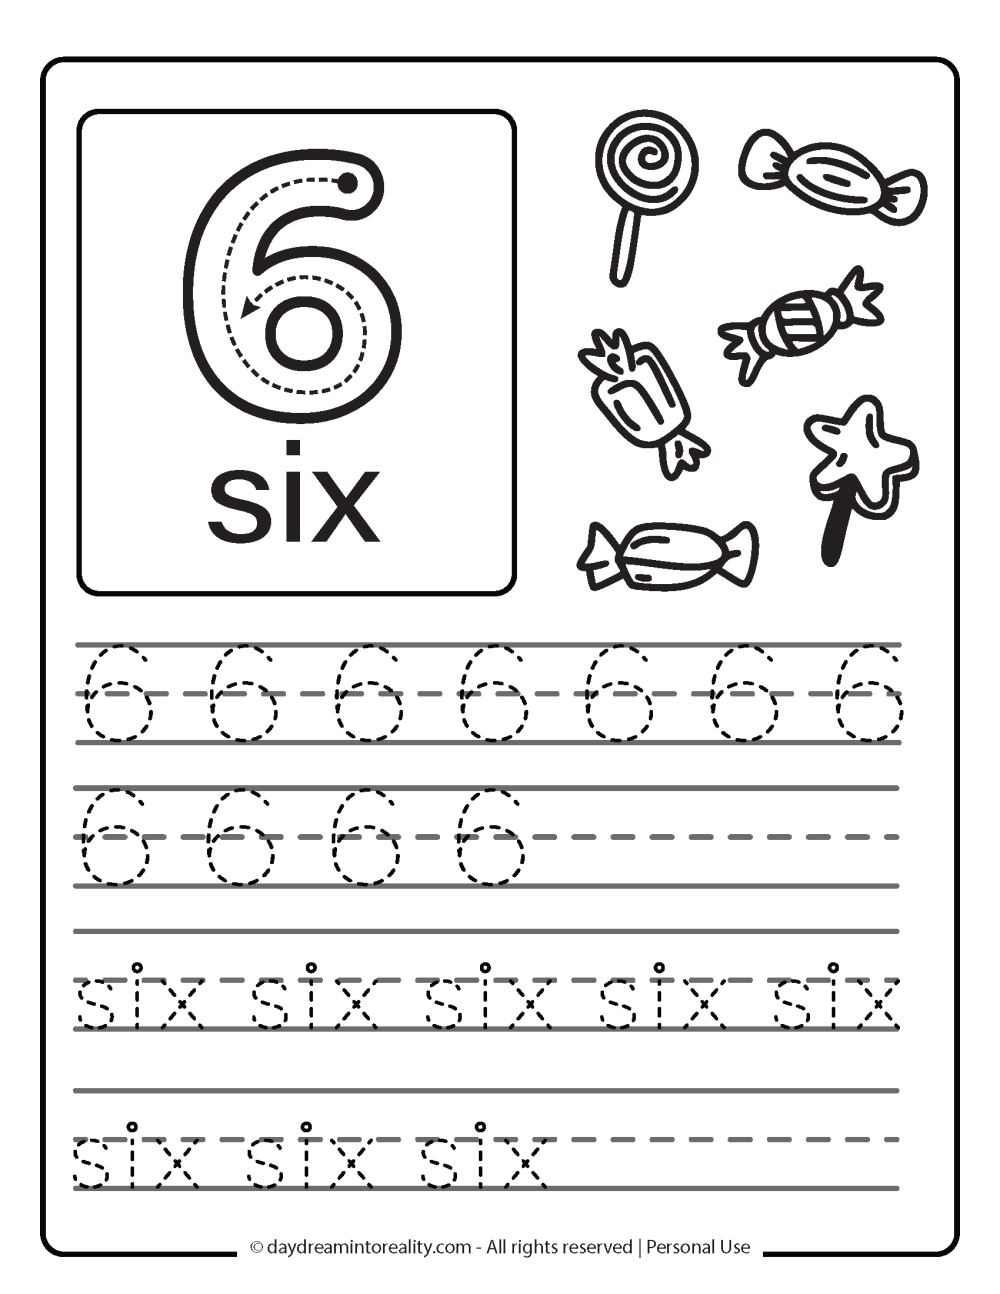 number 6 (numeric and word) worksheet free printable